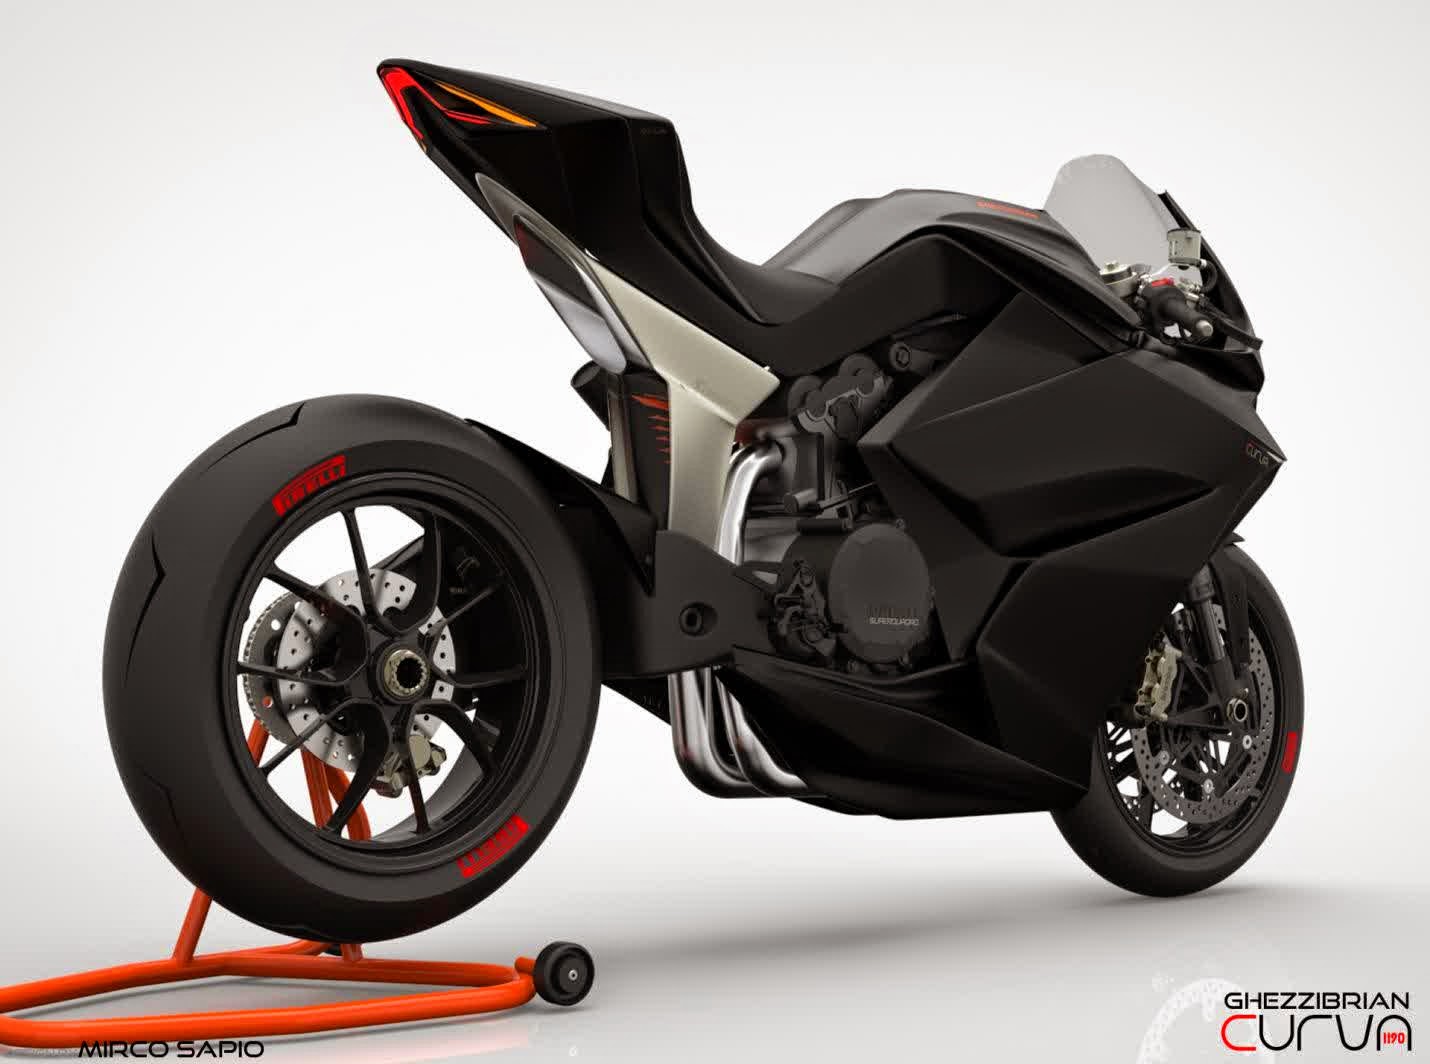 Koleksi Modifikasi Motor Seperti Ducati Terbaru Dan Terlengkap | Modifikasi Motor Vixion Terbaru